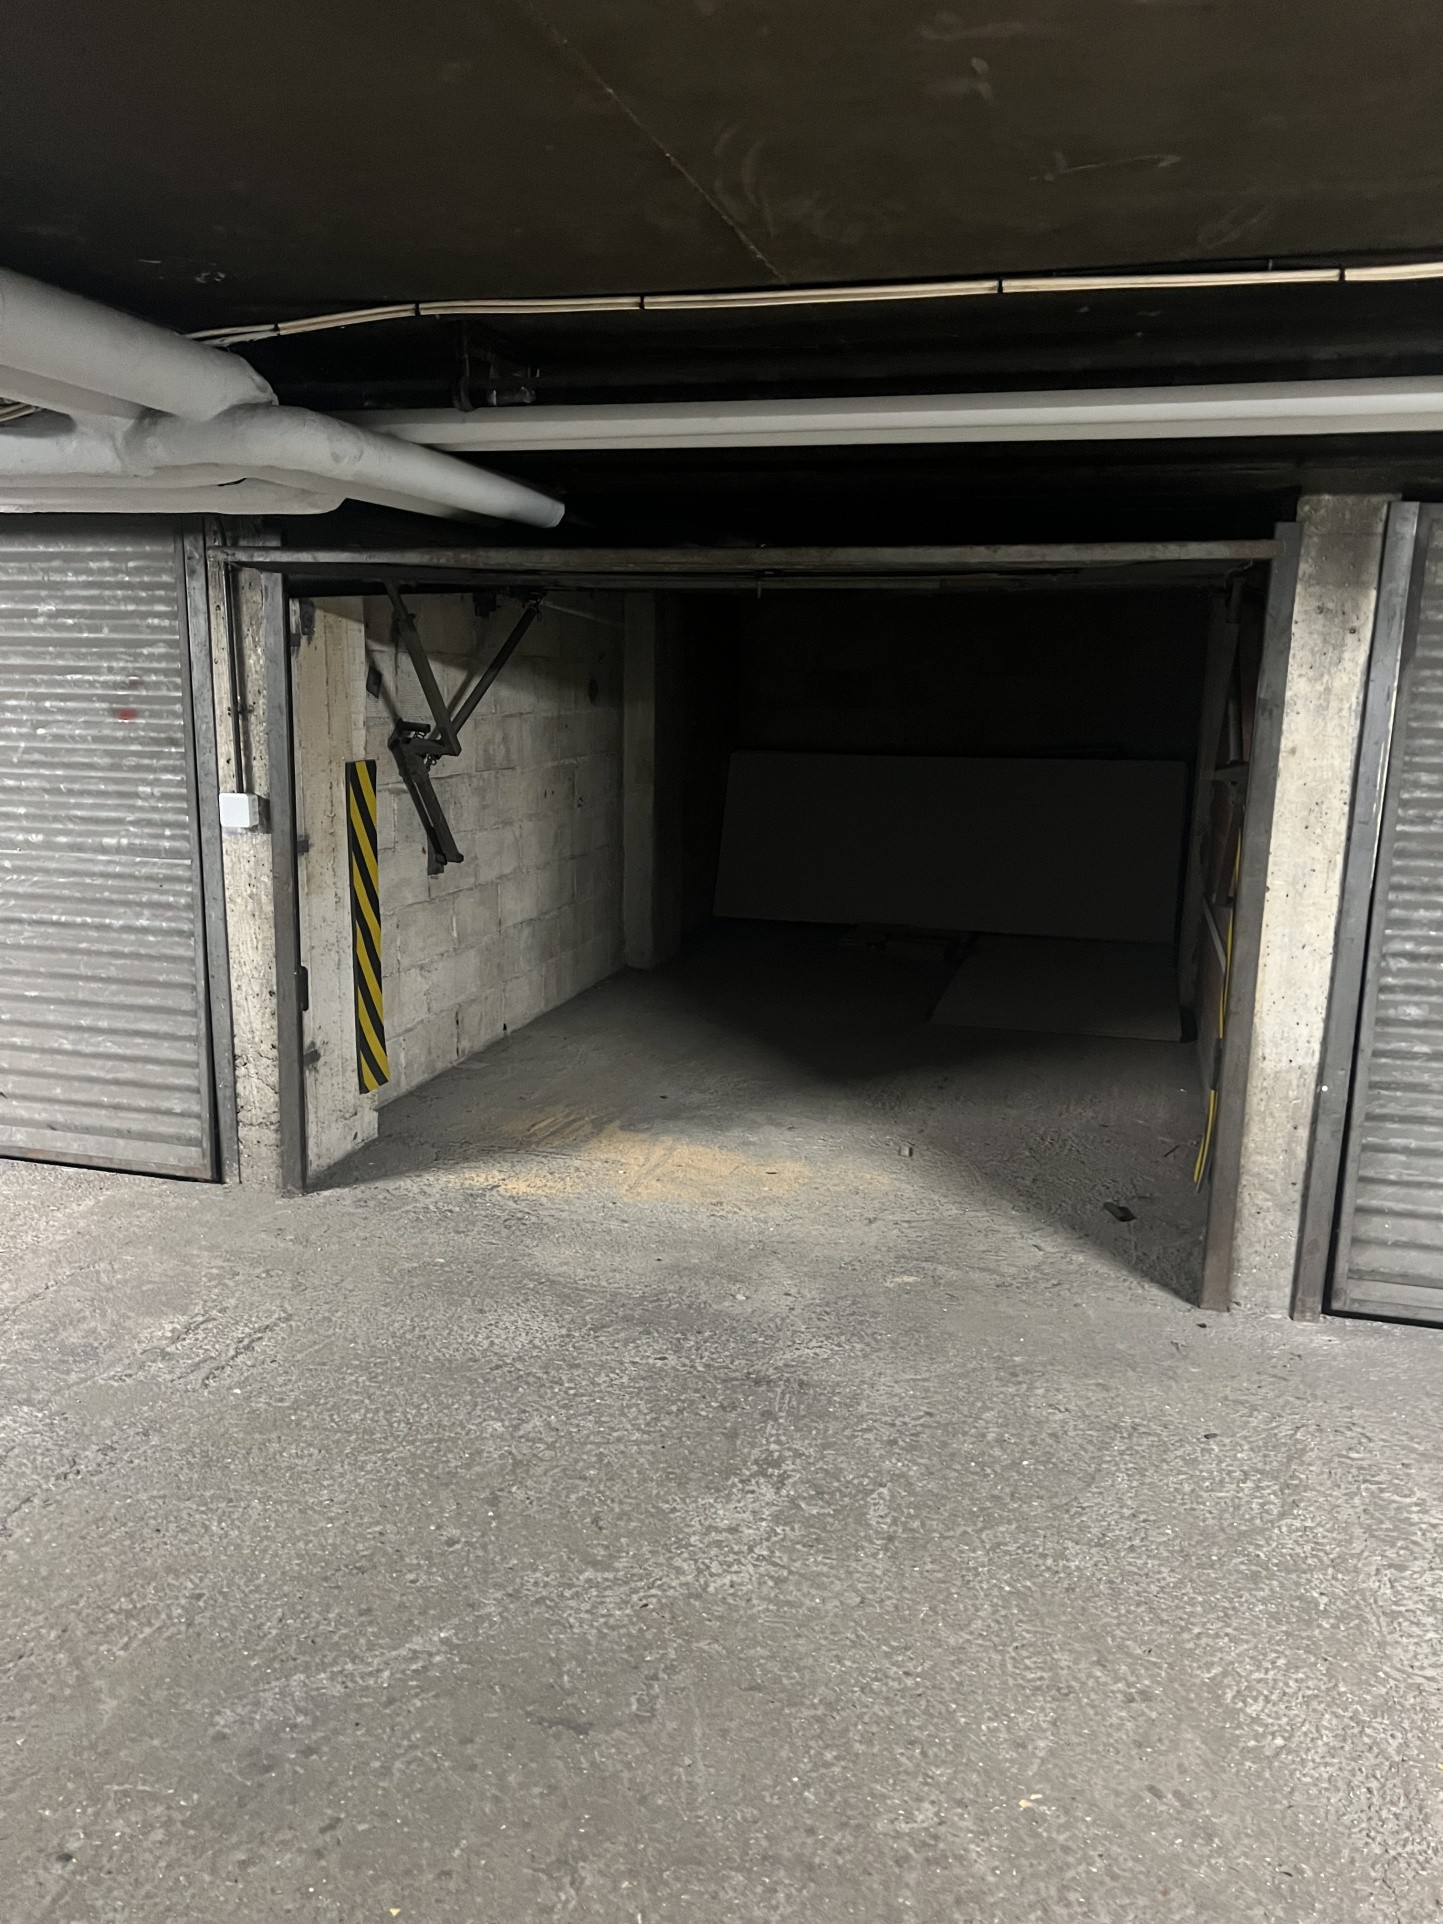 Location Garage / Parking à Boulogne-Billancourt 0 pièce